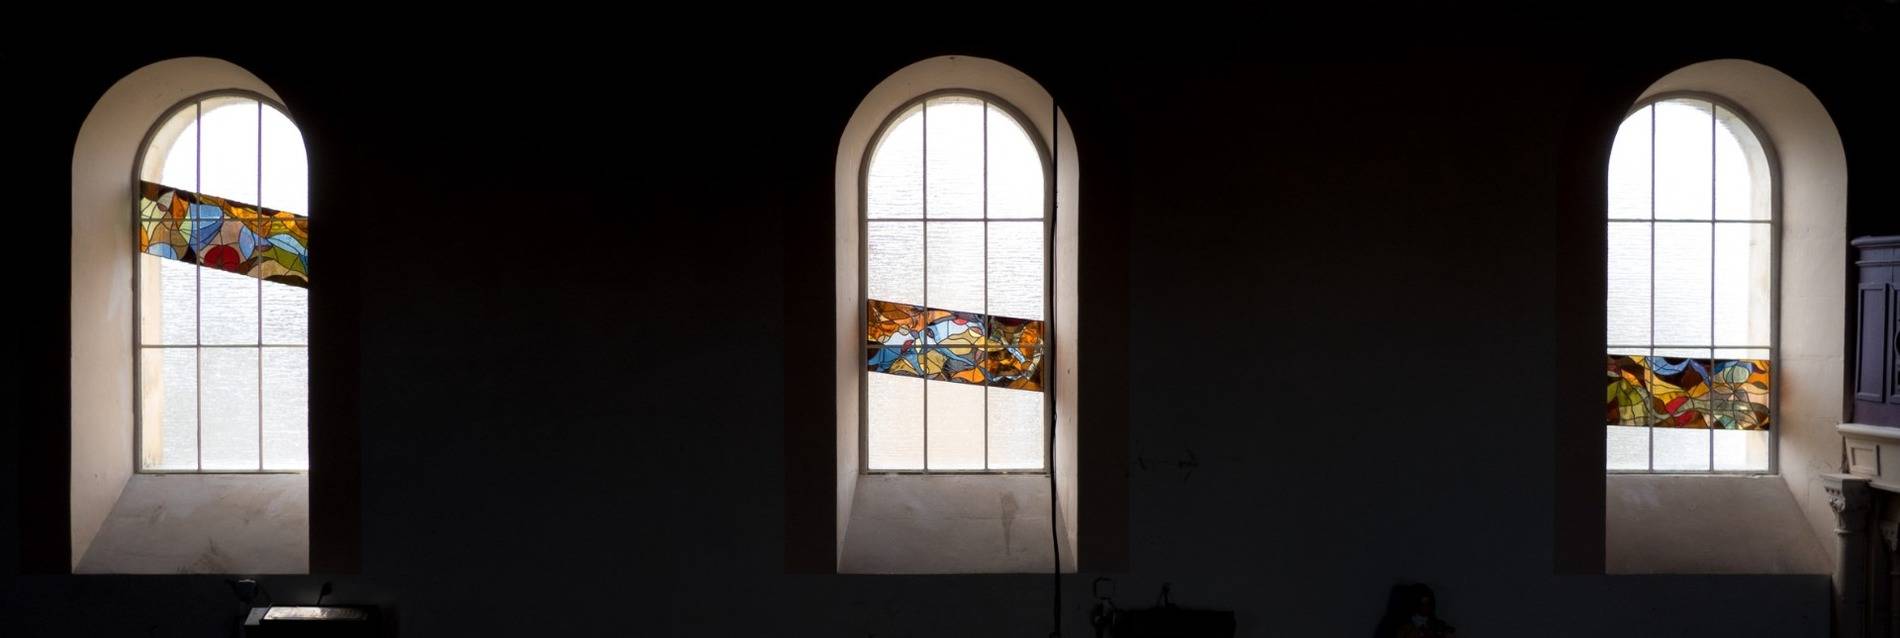 clair de lumière - vitrail contemporain - église d'ambrault - cartonnier nathalie gesell - indre